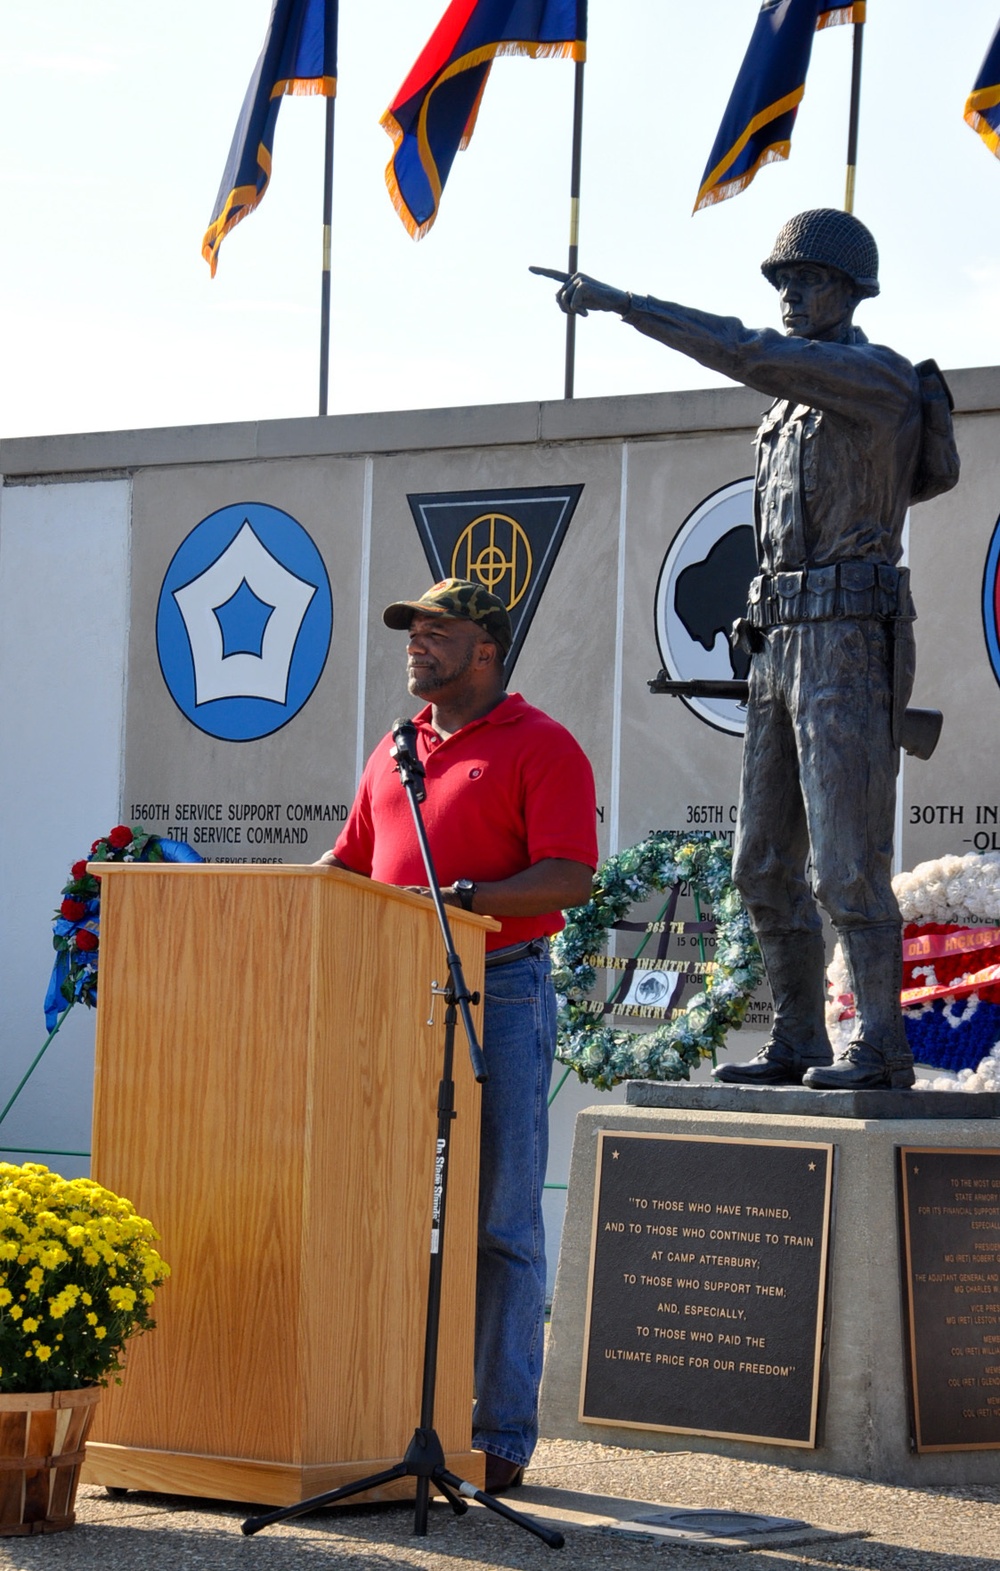 Camp Atterbury hosts 20th Annual Veteran's Memorial Commemoration